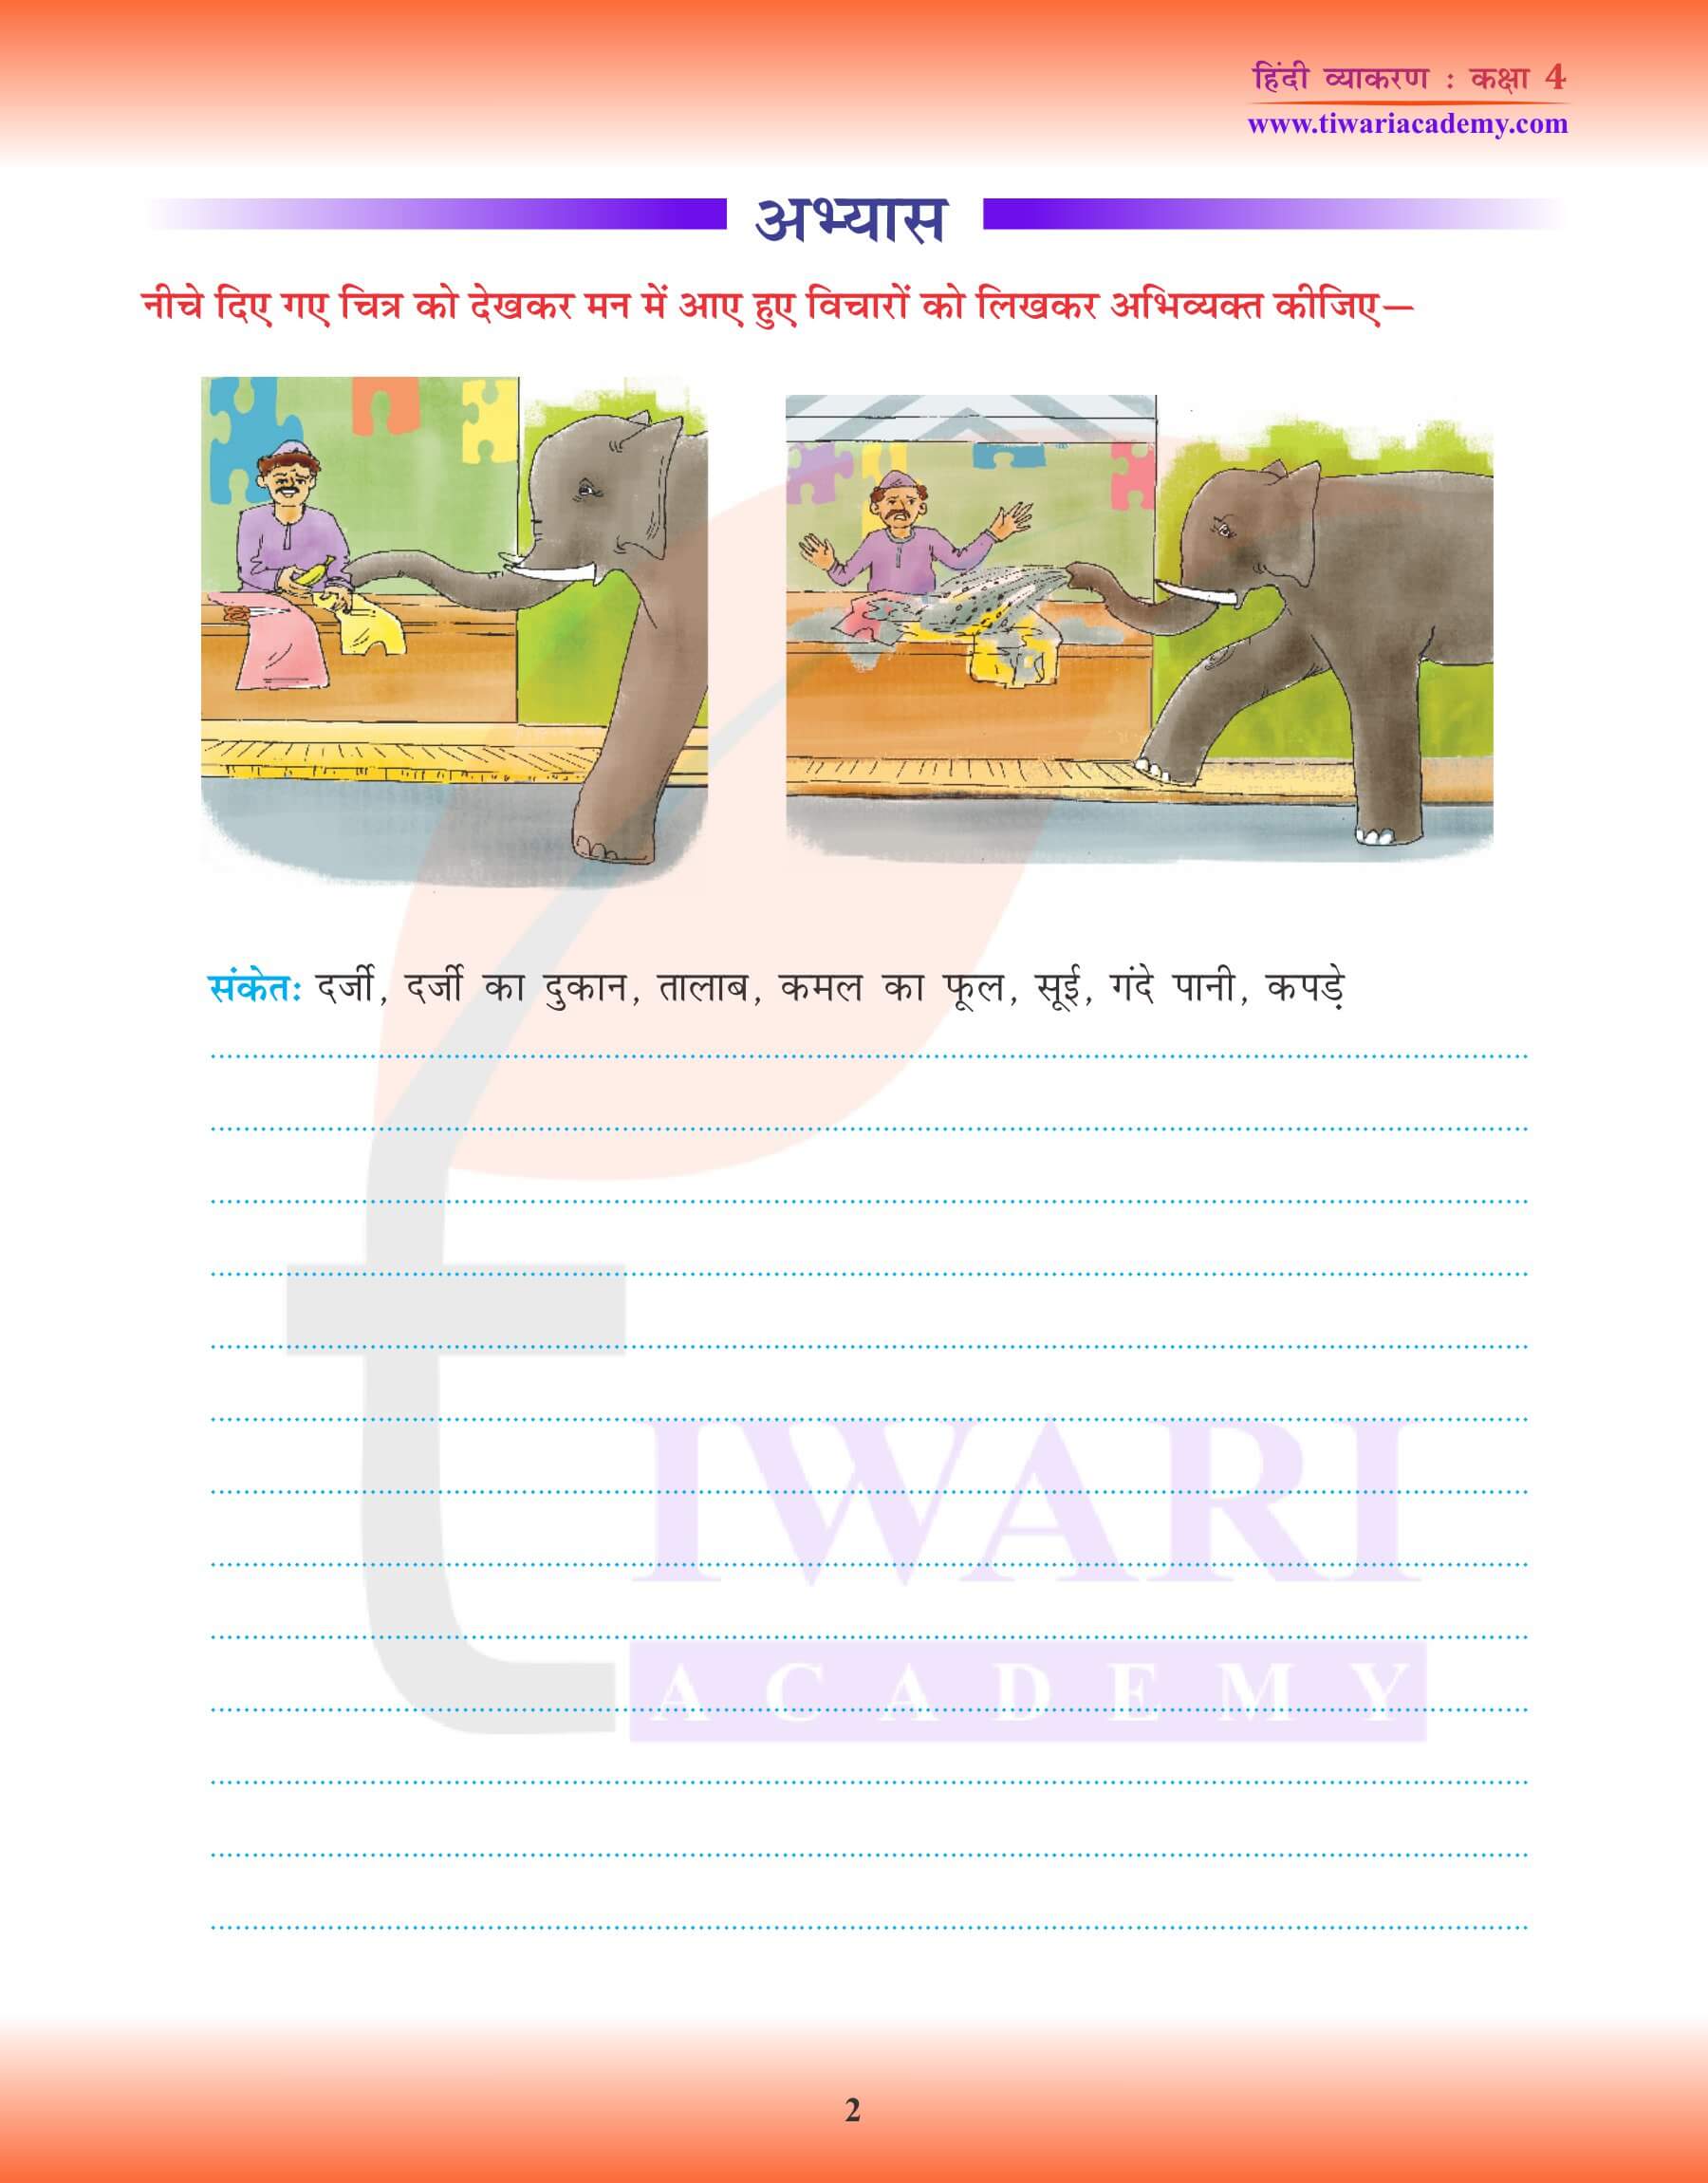 कक्षा 4 हिंदी व्याकरण में चित्र लेखन